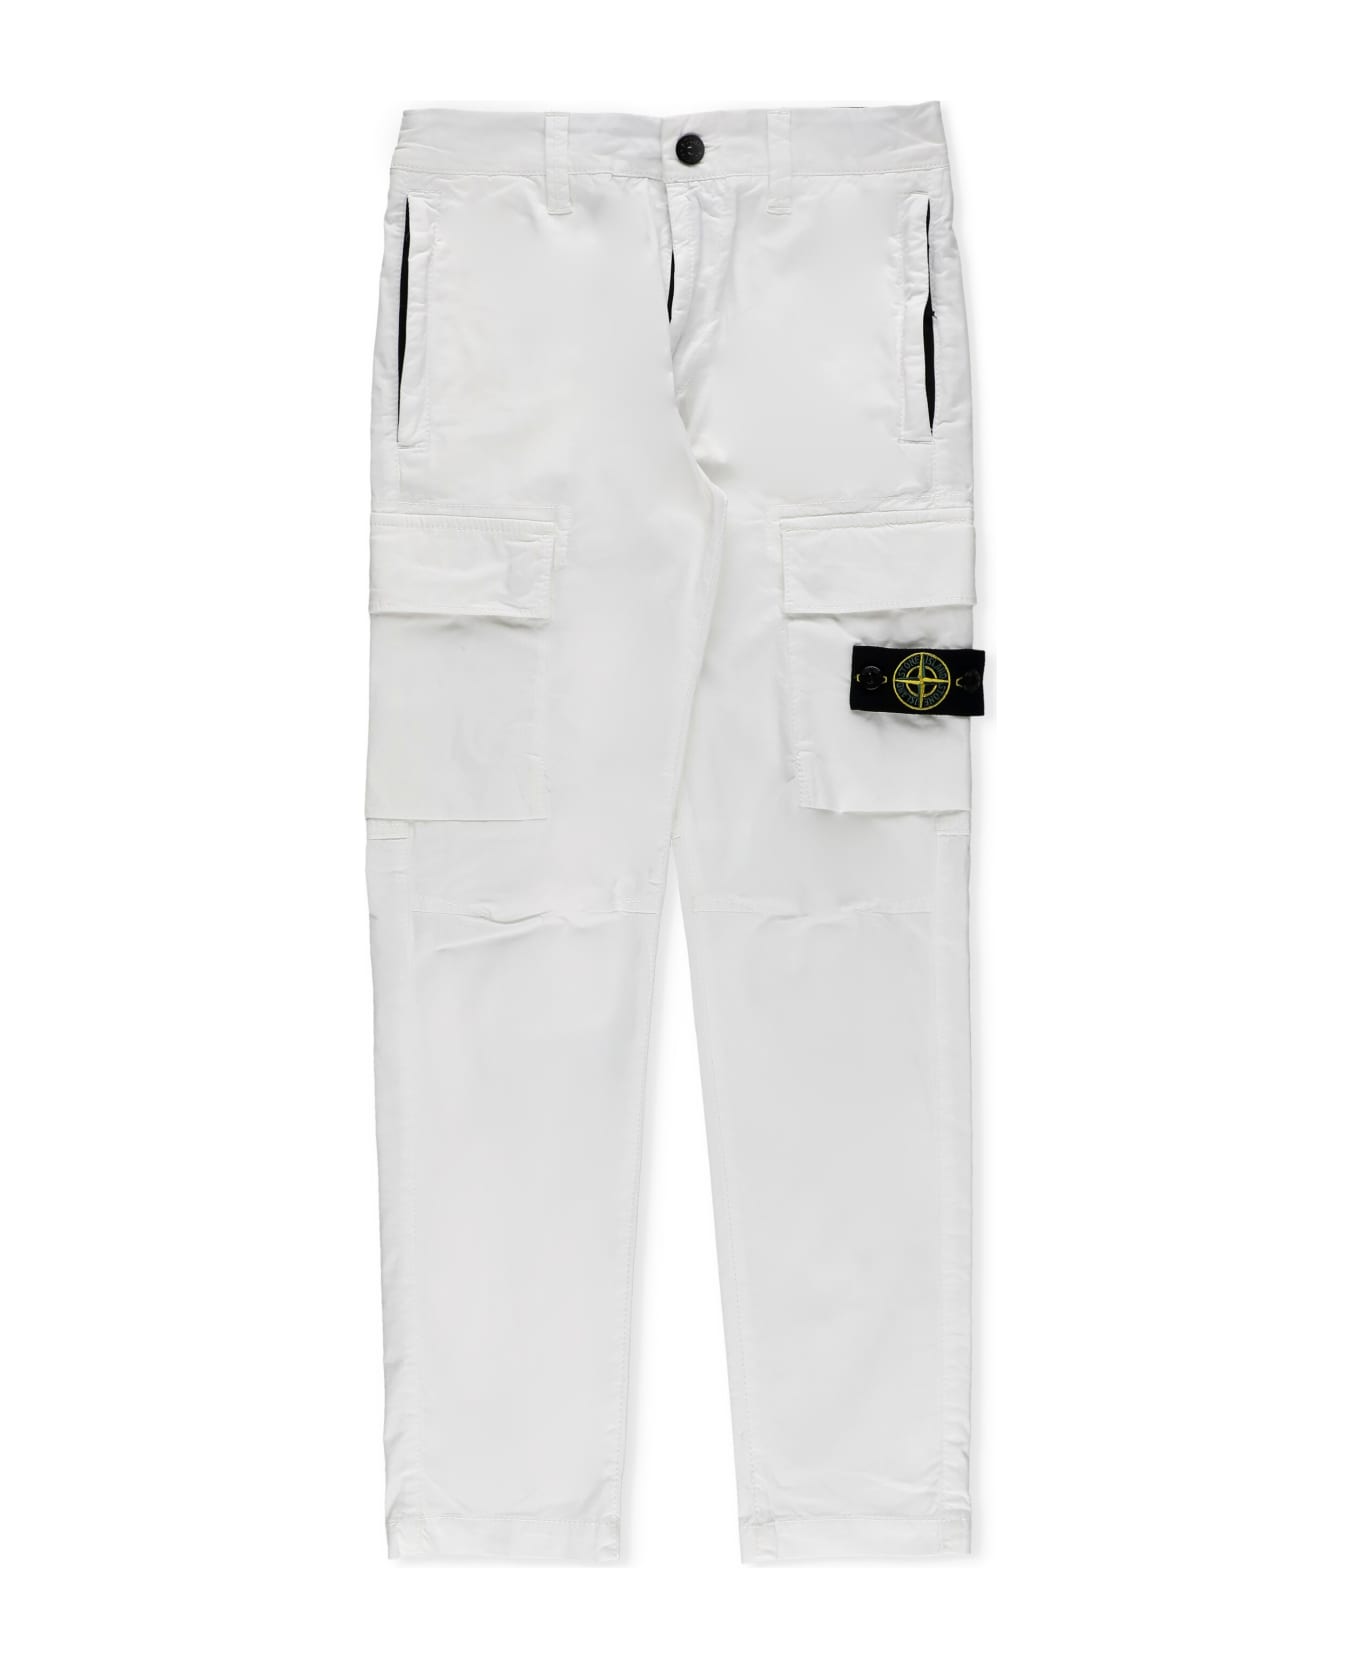 Stone Island Cotton Cargo Pants - White